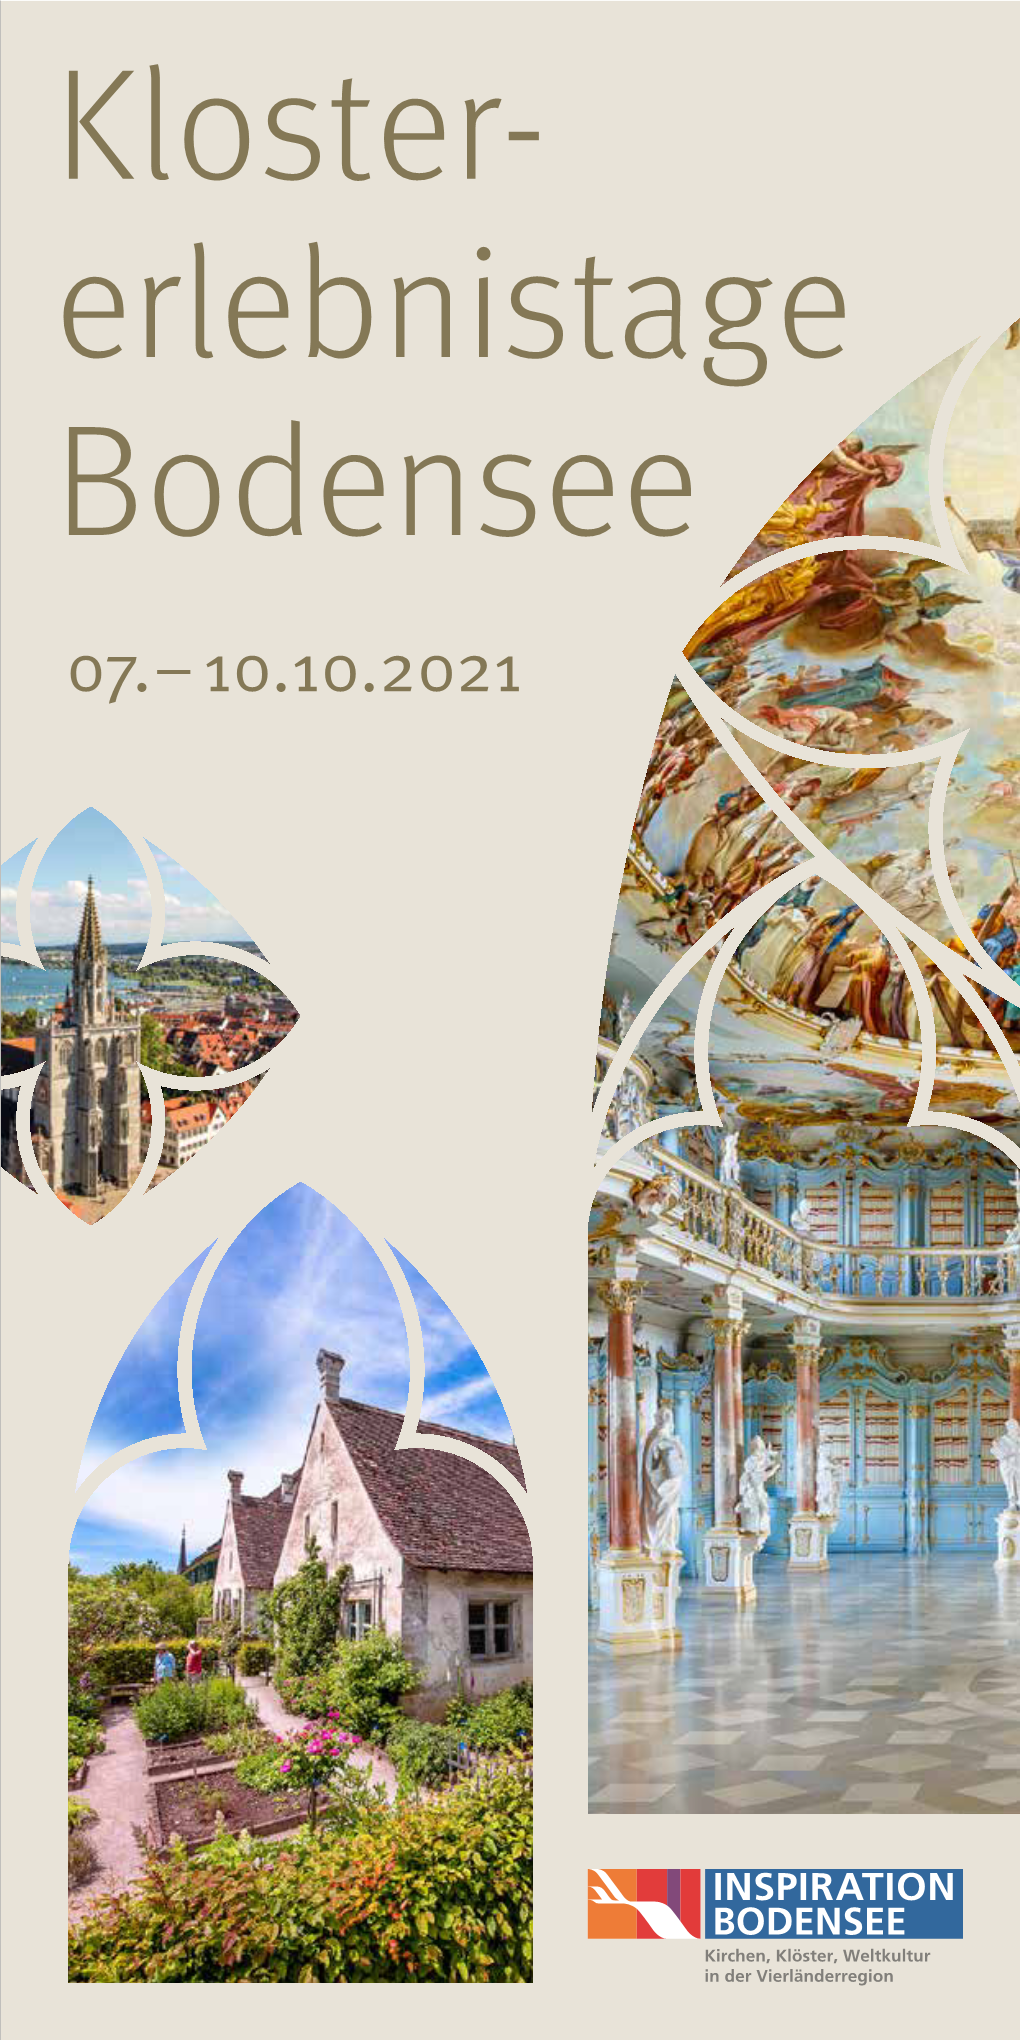 Borschüre Klostererlebnistage 2021